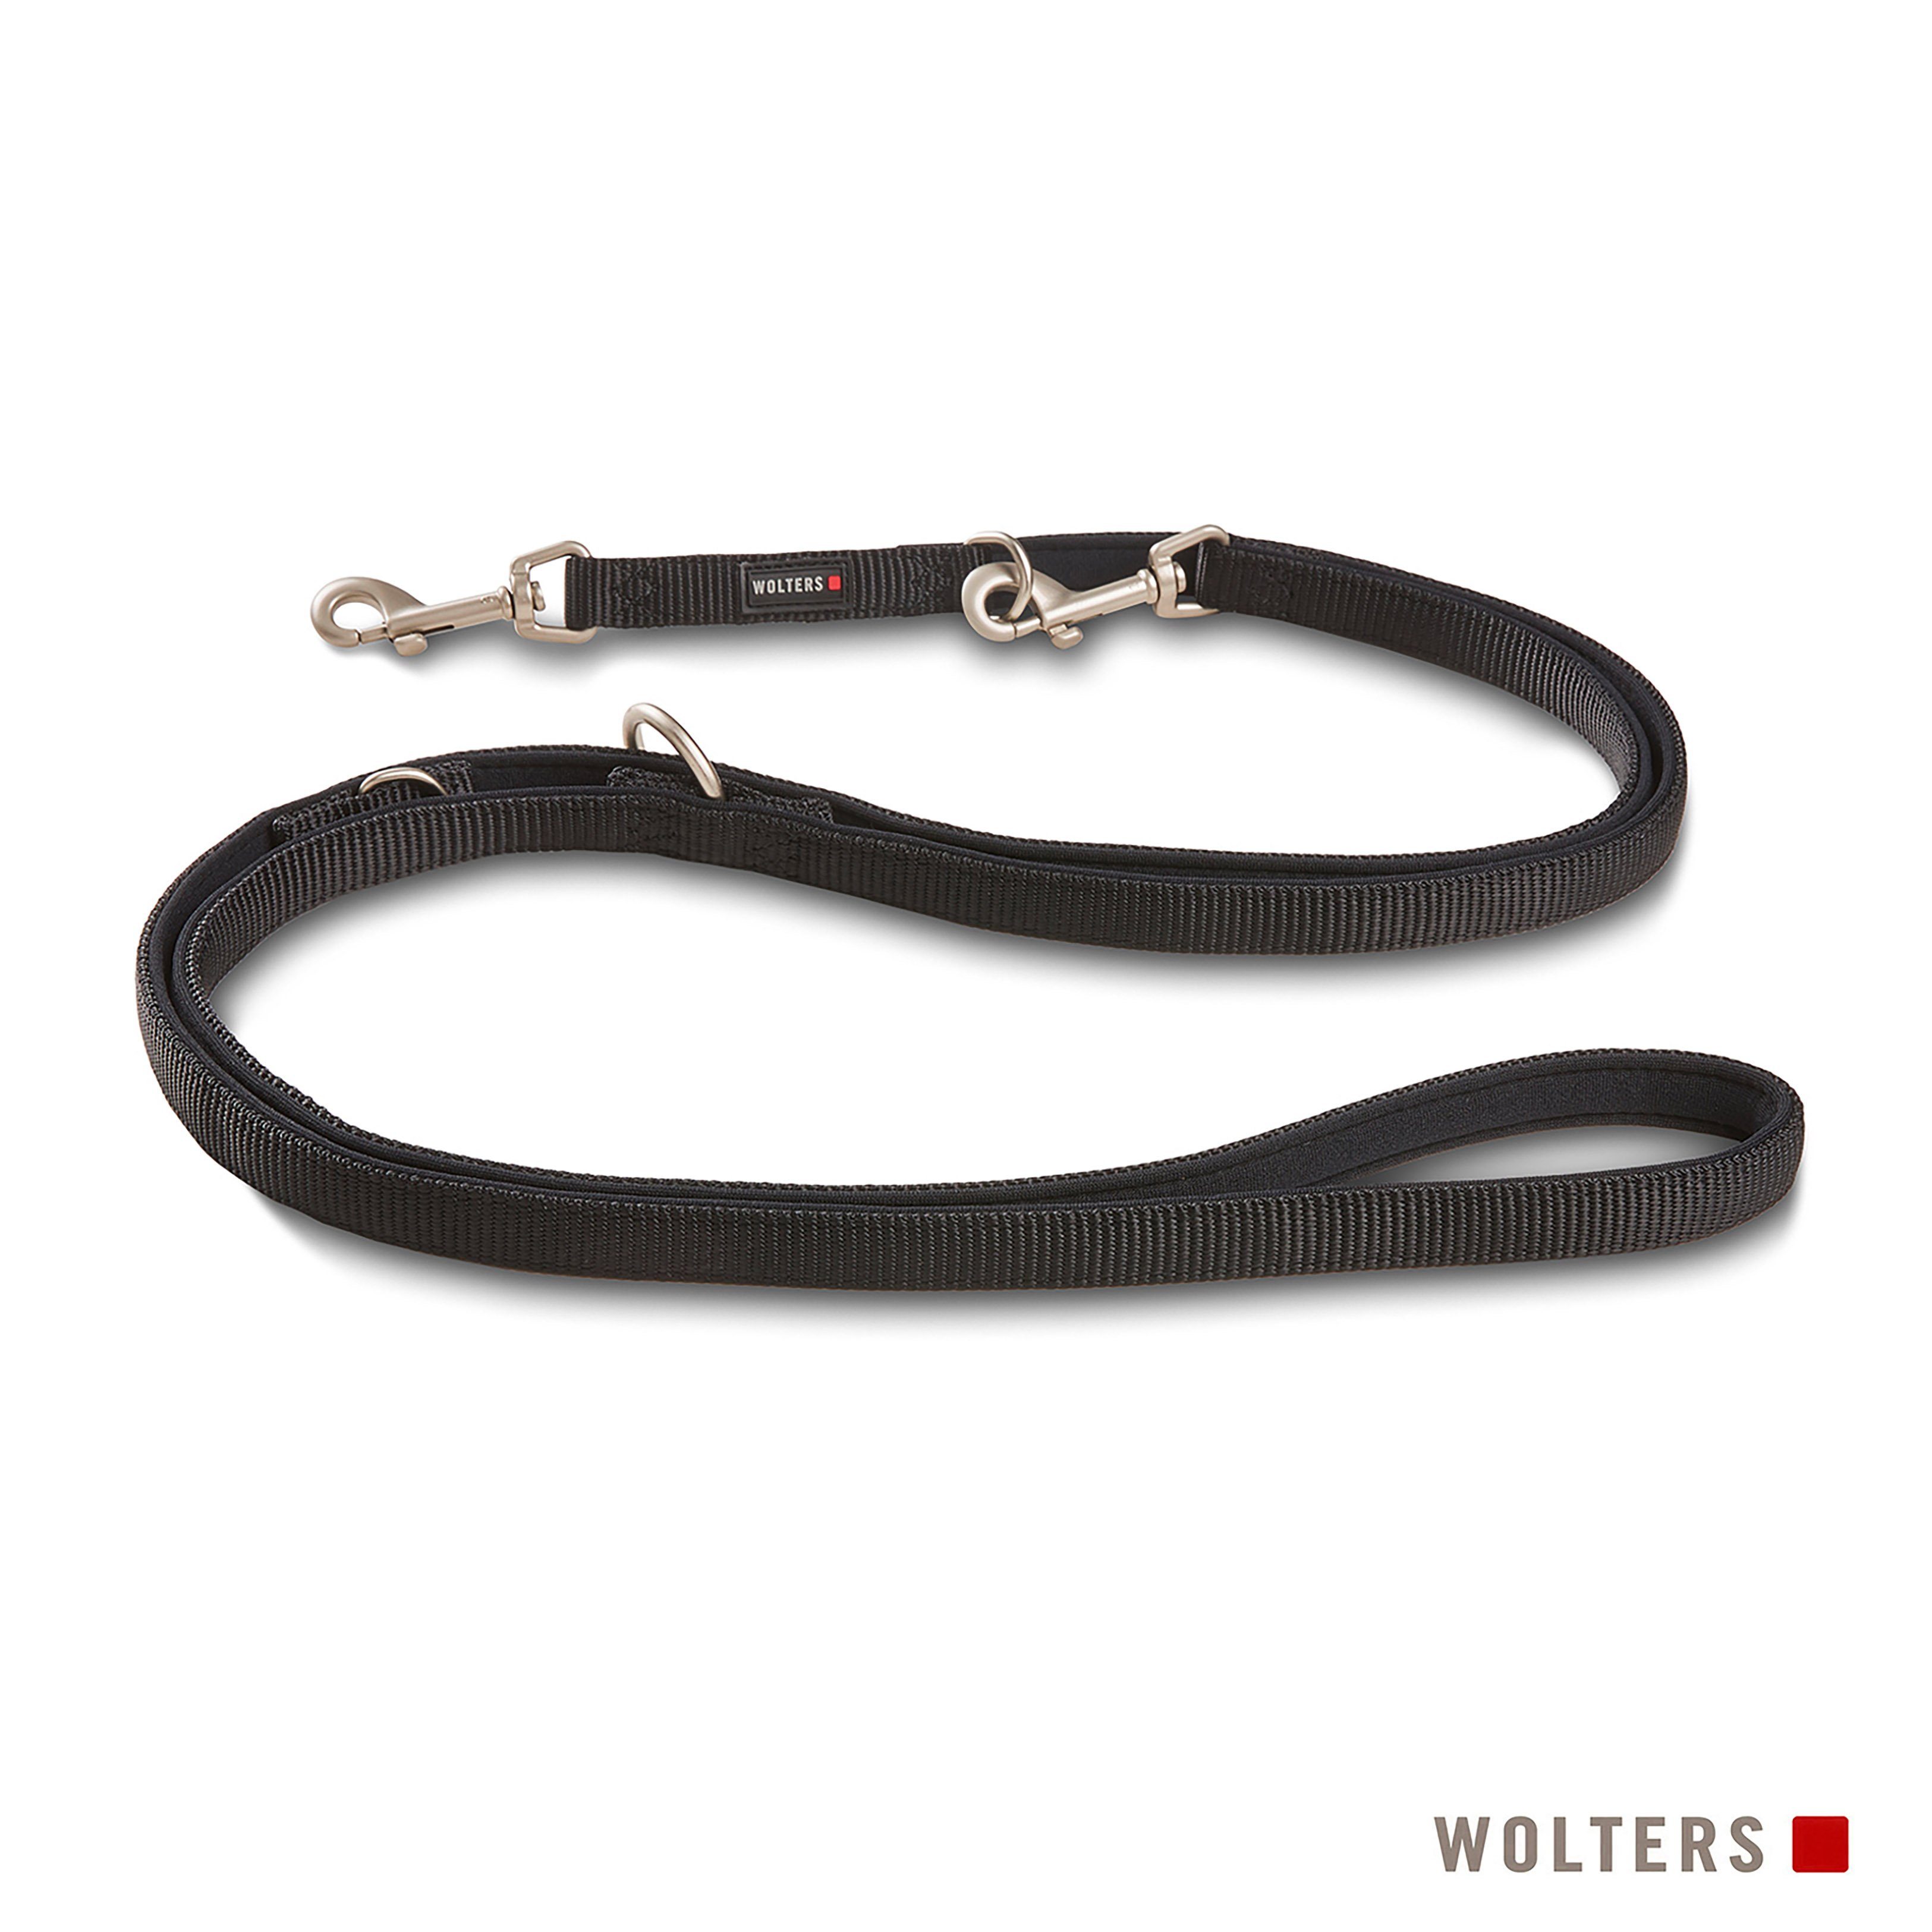 Wolters Hundeleine Professional Comfort Führleine, Nylon, Neopren, in verschiedenen Größen, in verschiedenen Längen, gepolstert schwarz/schwarz